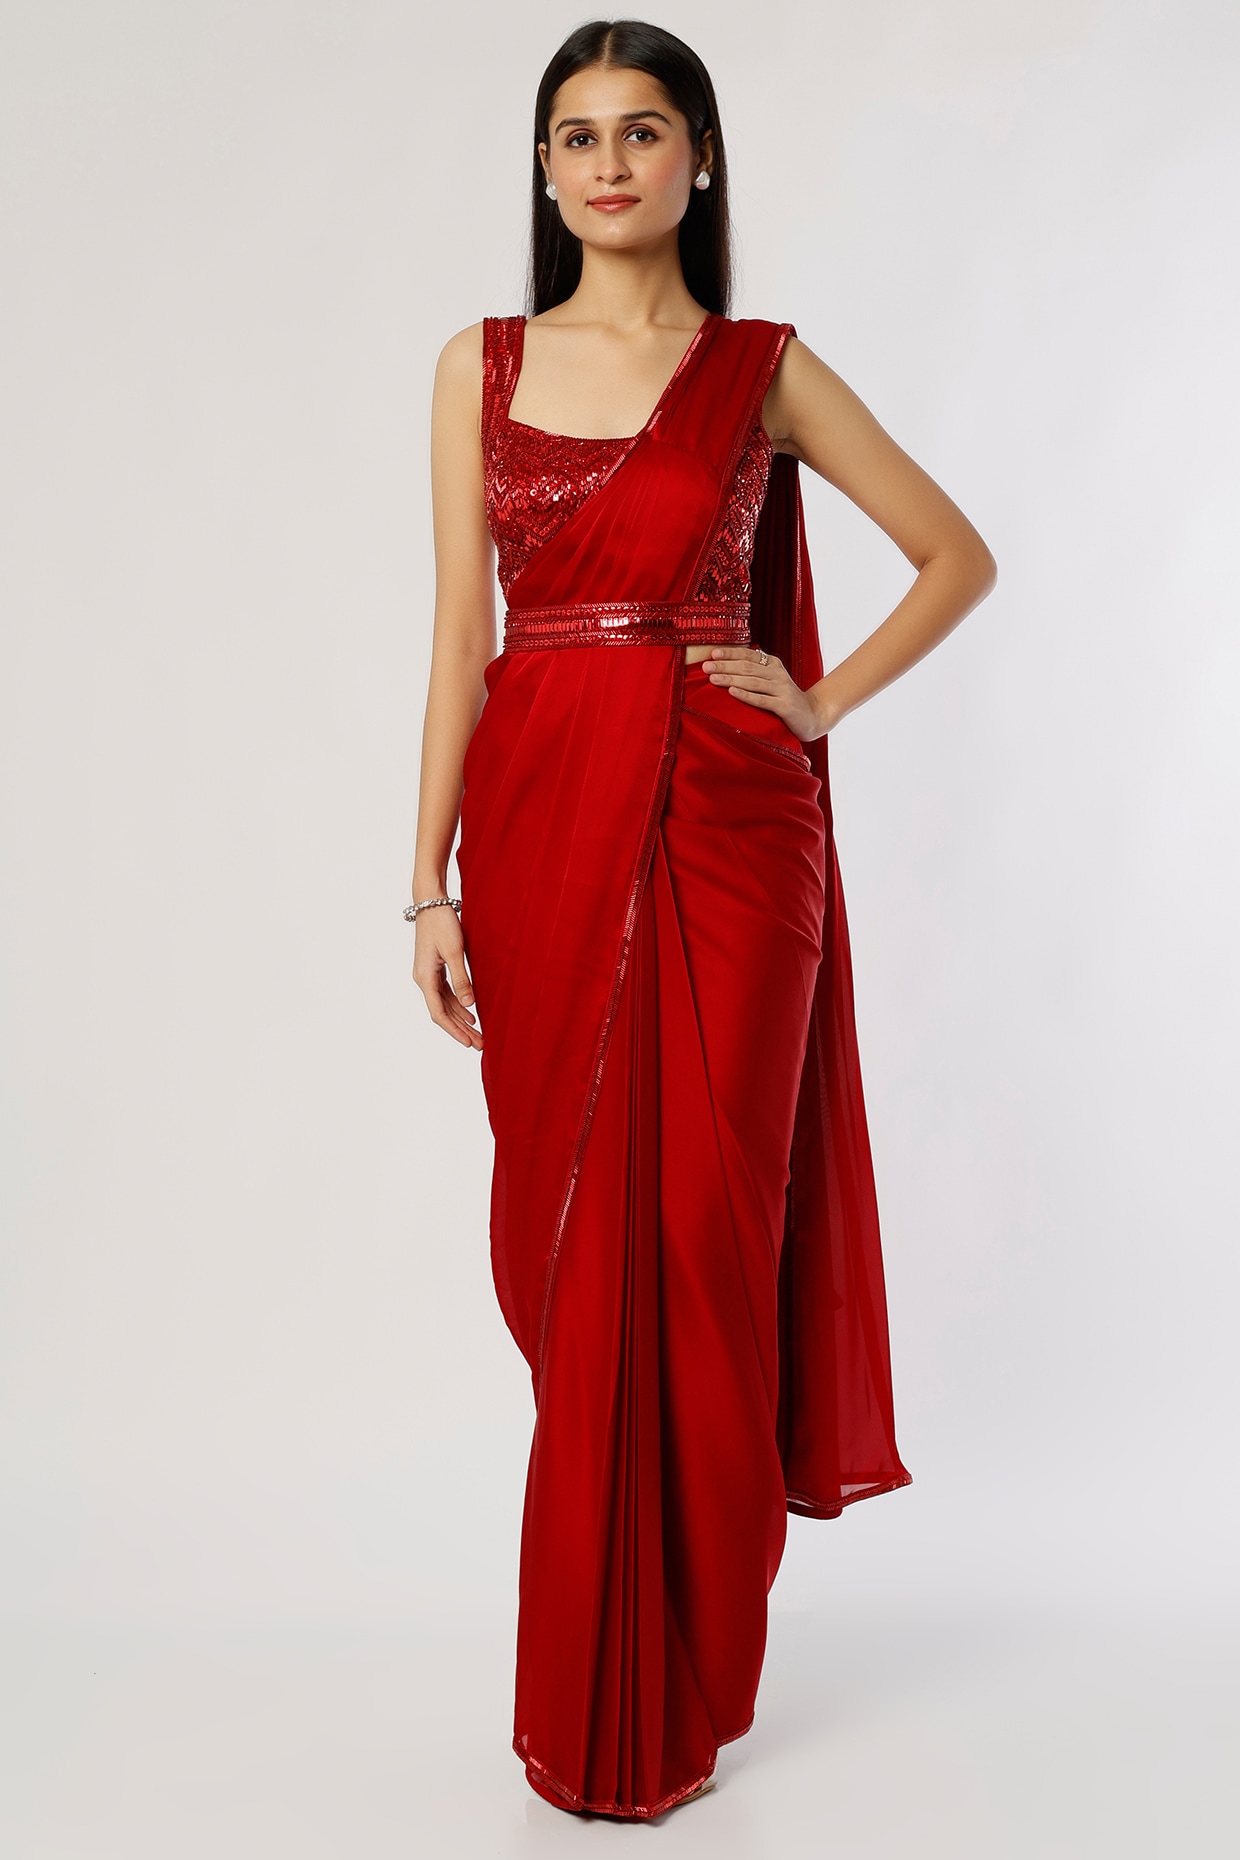 Designer Saree Gown